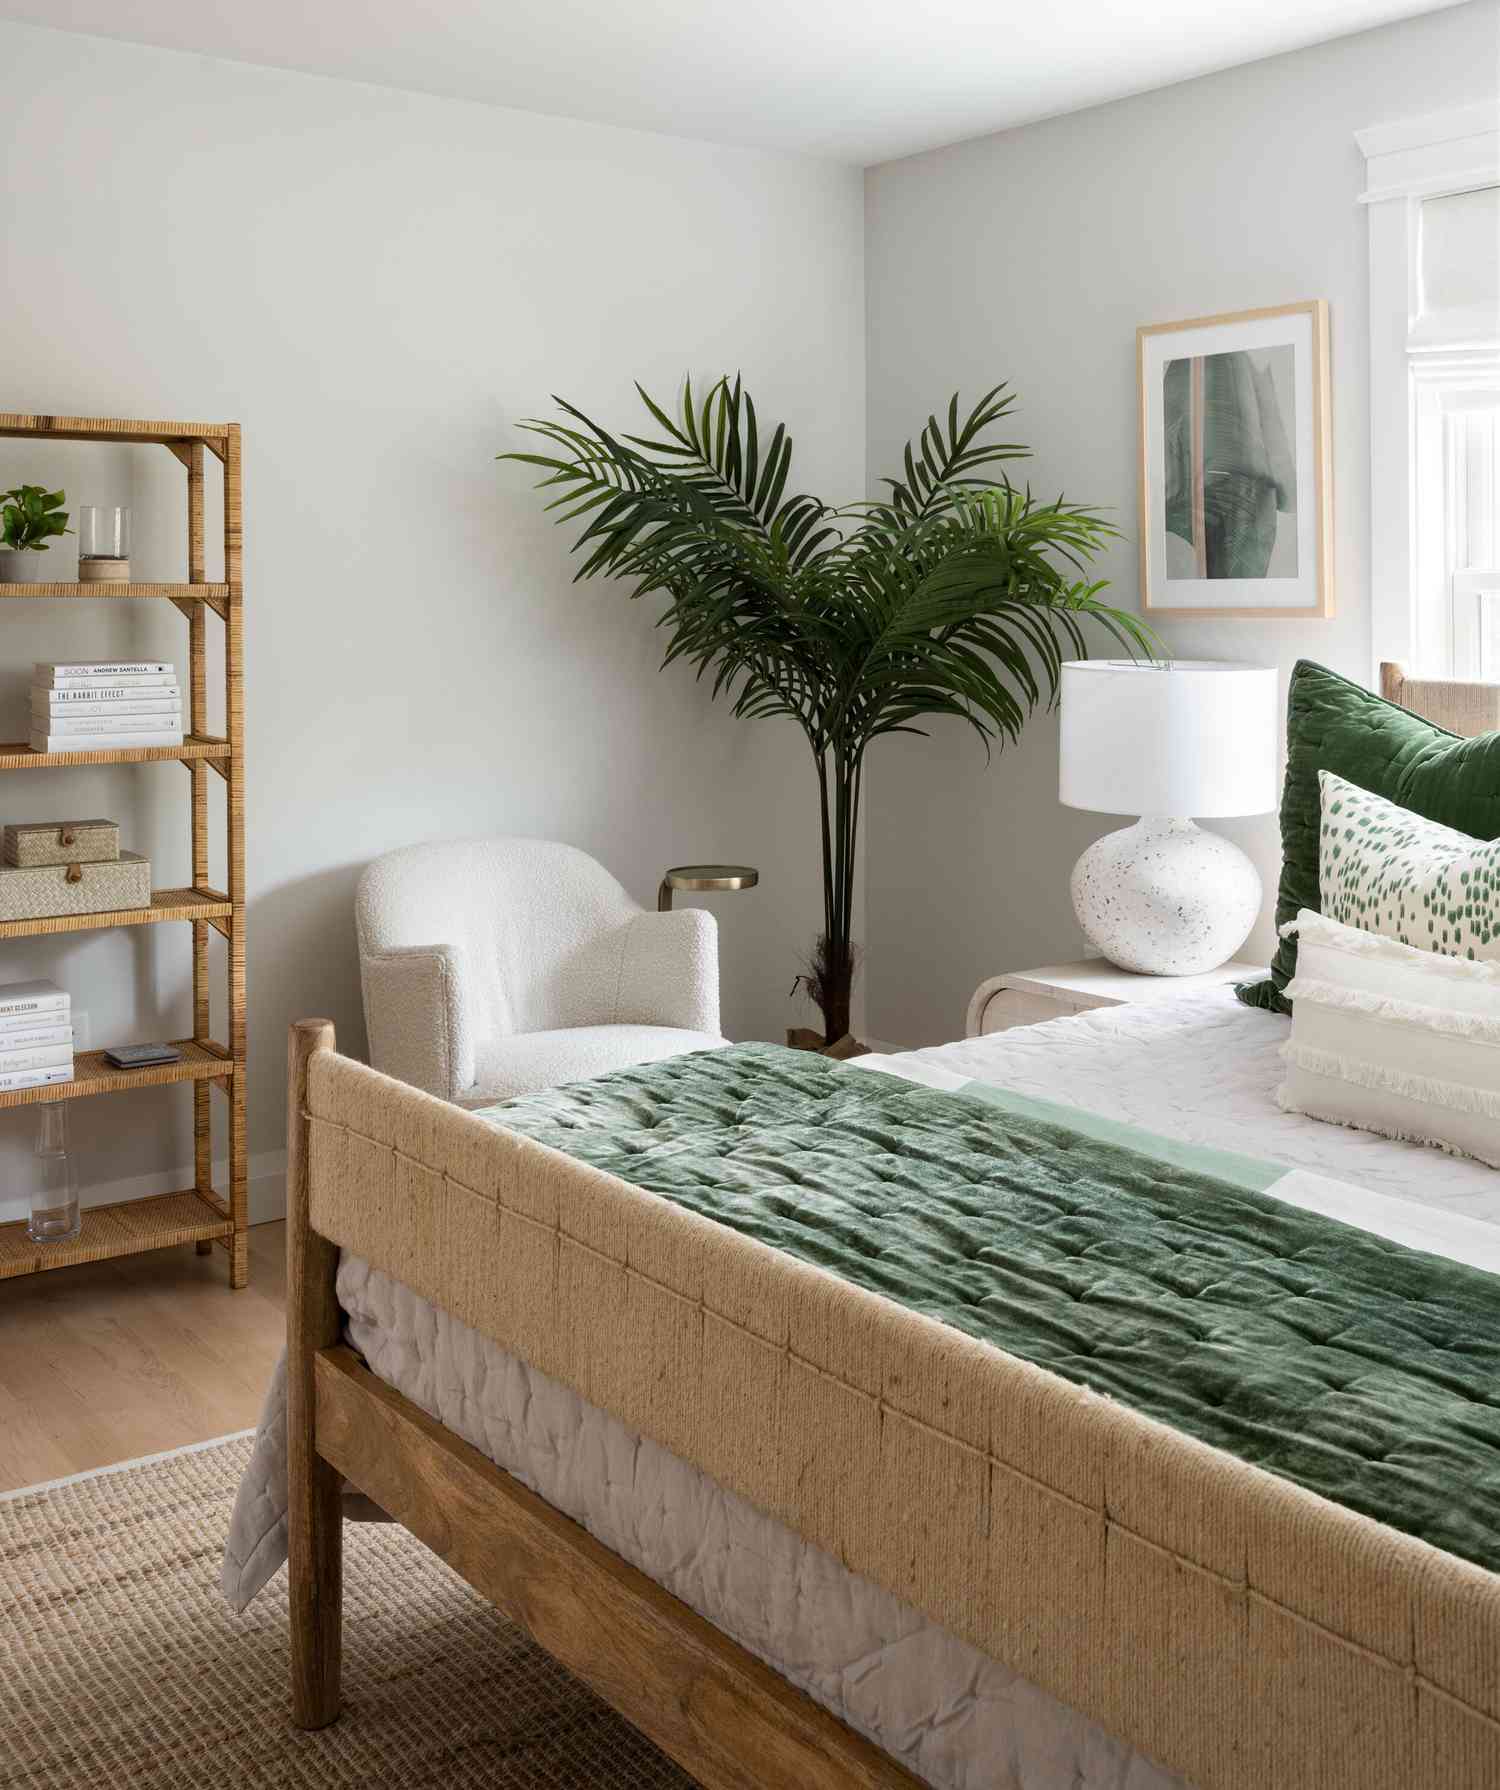 Chambre à coucher avec décor vert olive et beige.